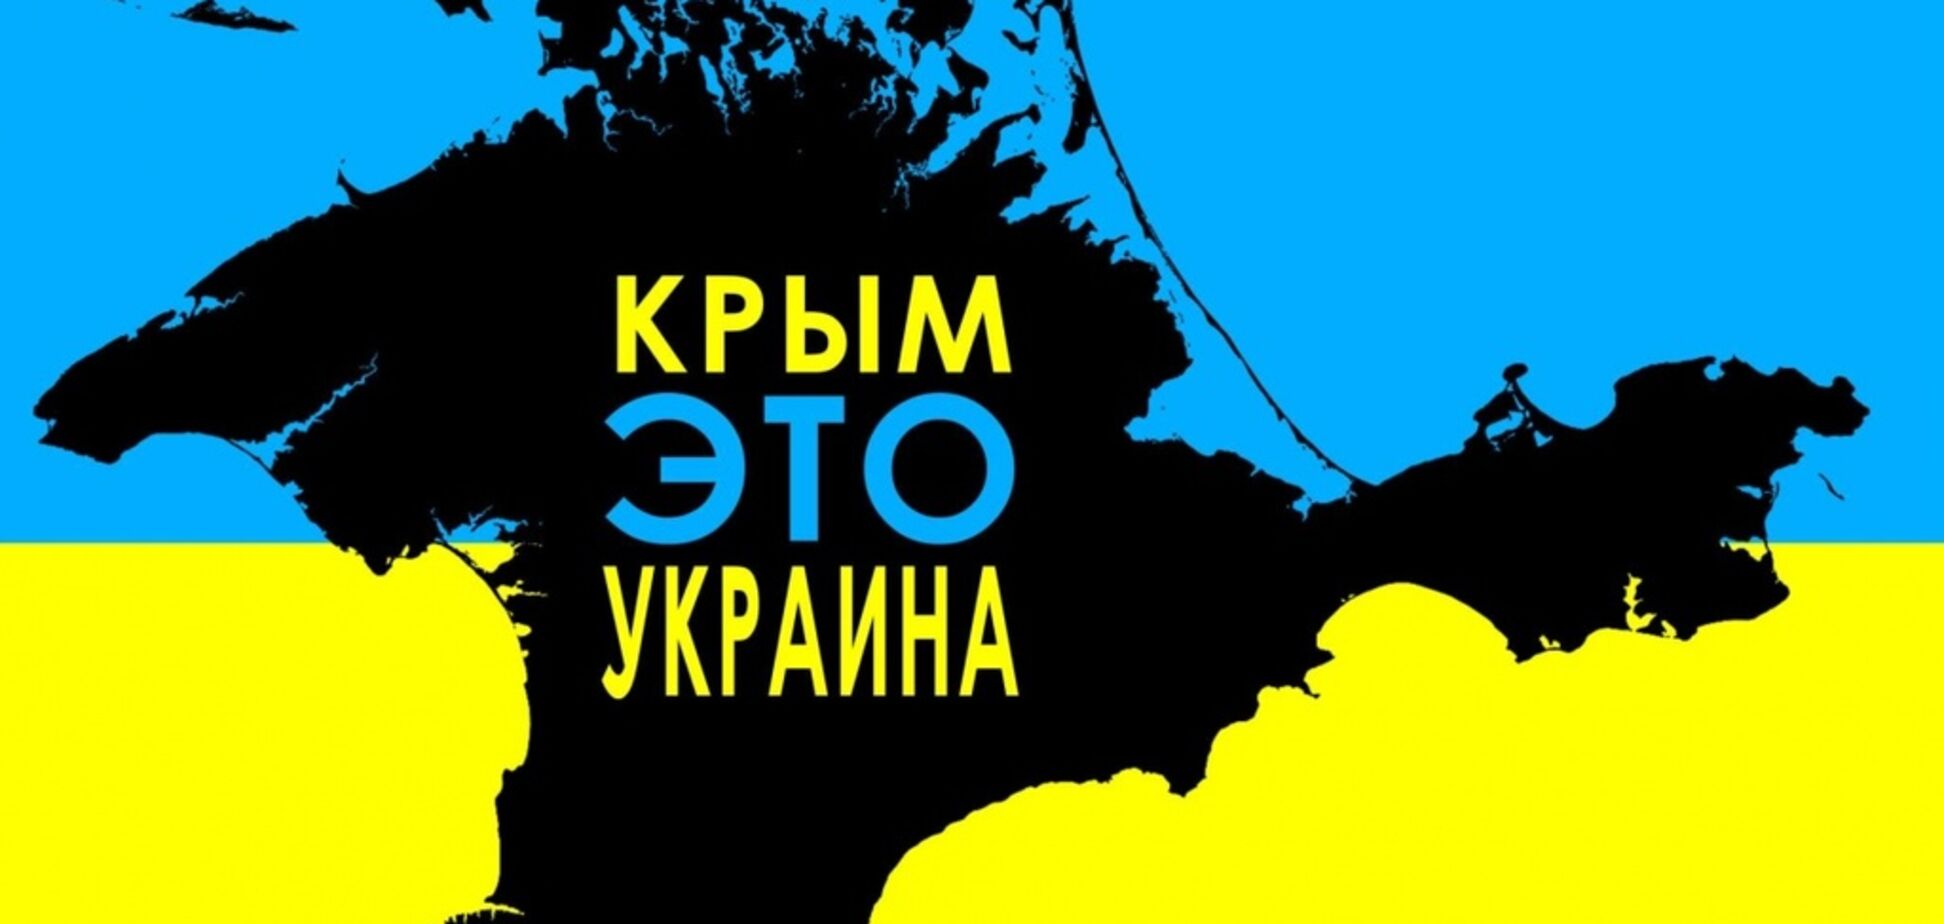 Крым – это Украина! В России придумали, как заставить рисовать ворованный полуостров на картах